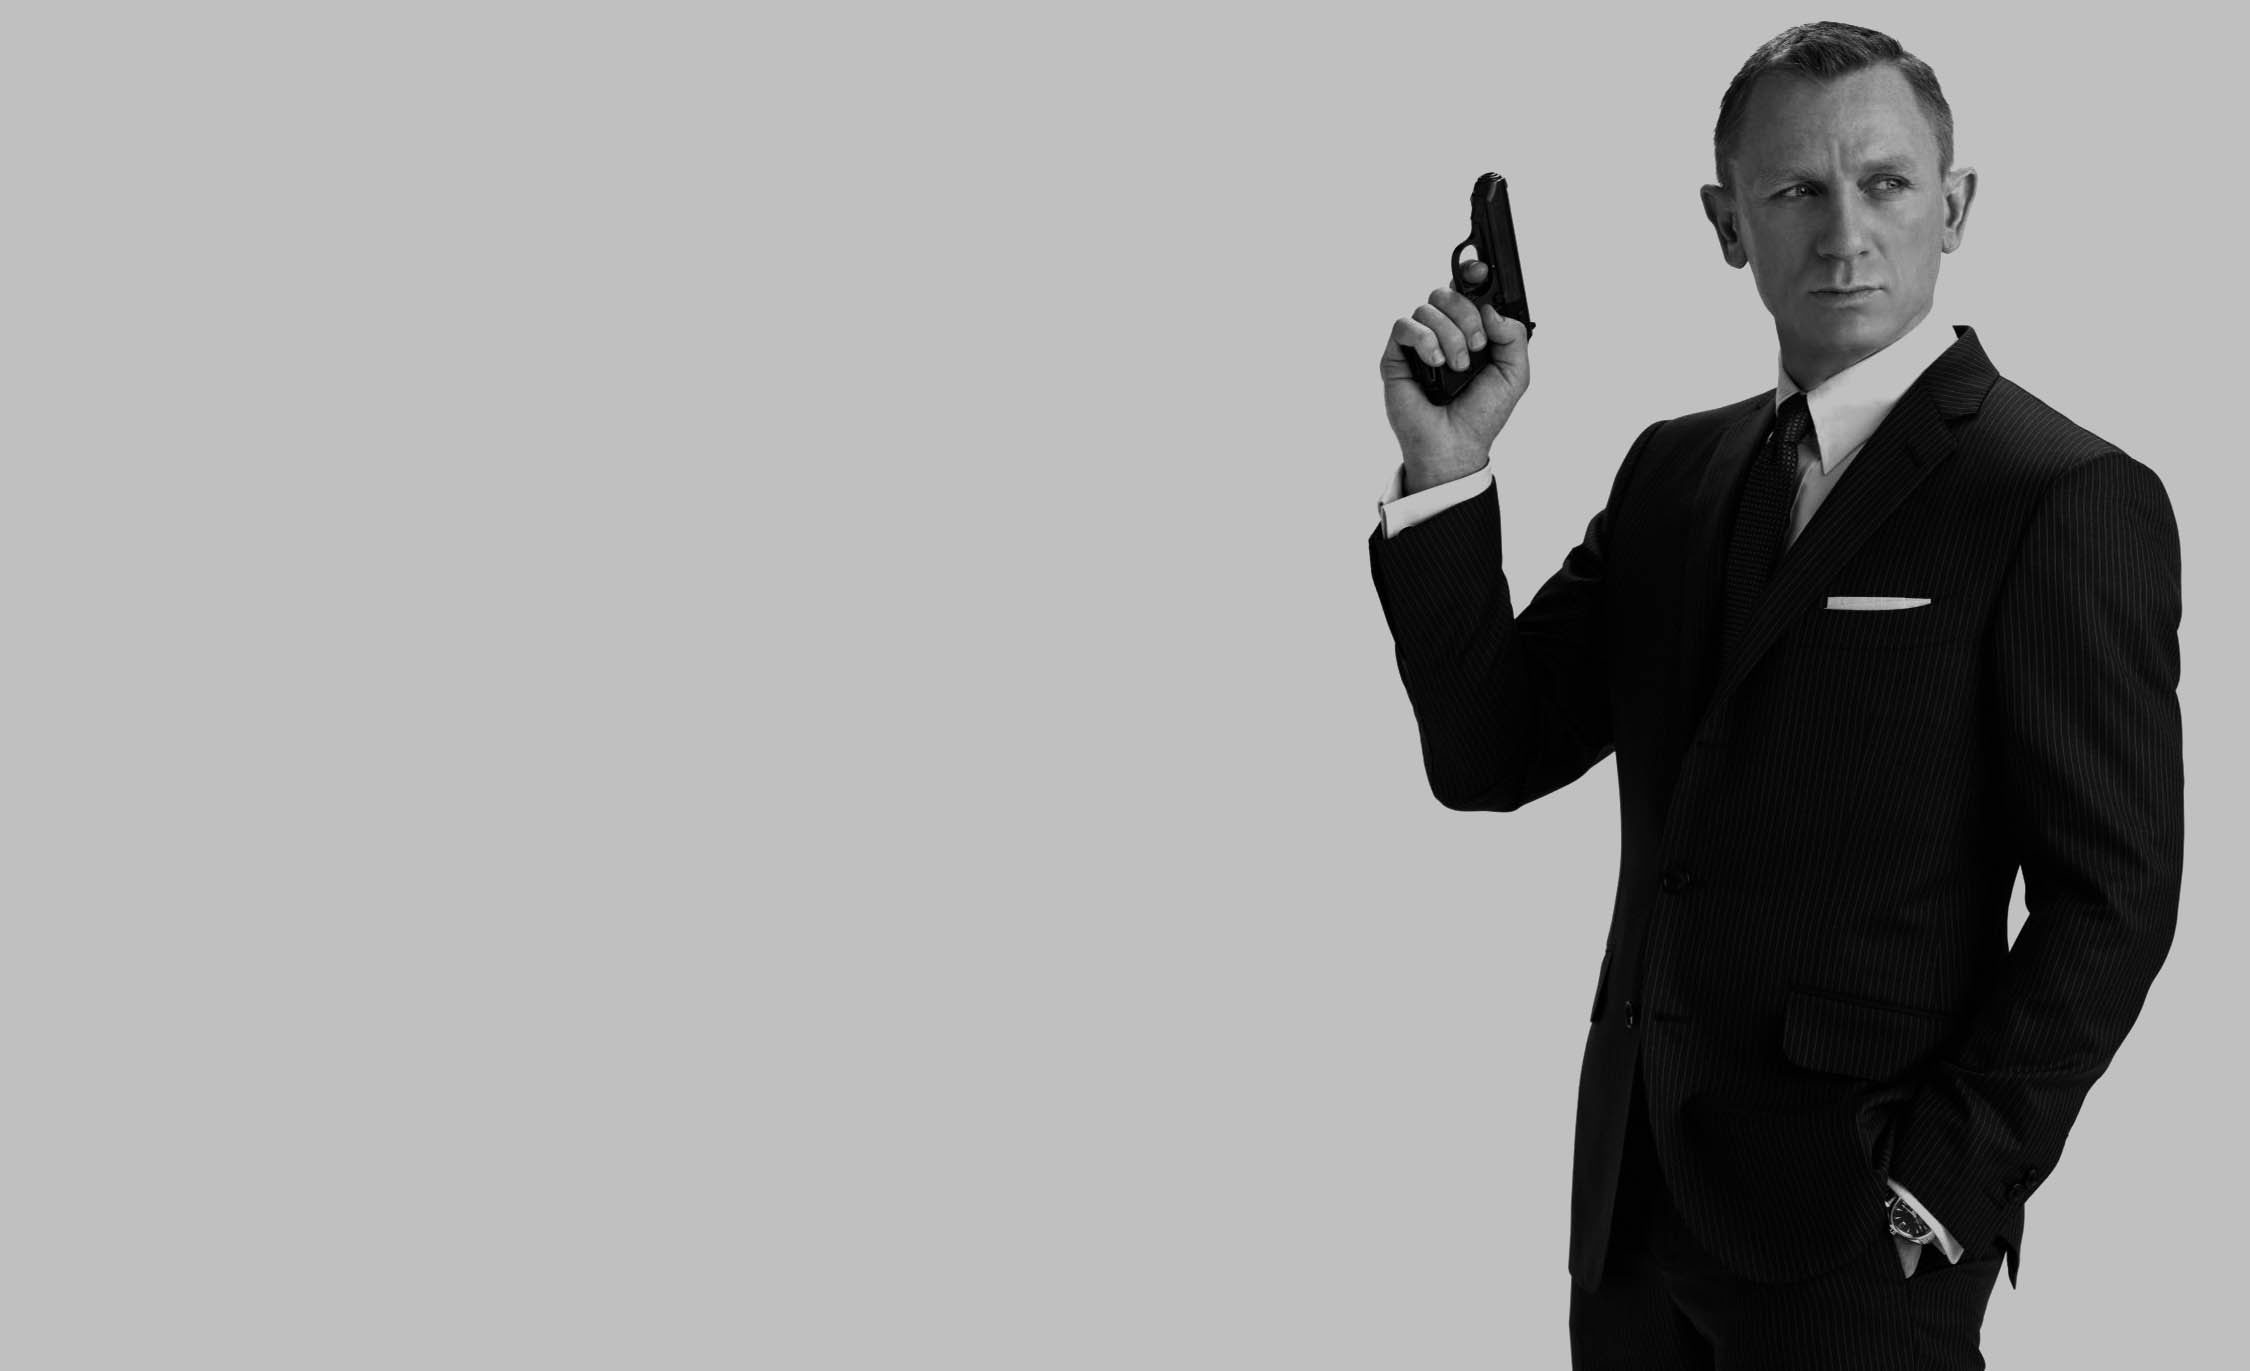 James Bond Wallpaper Daniel Craig The Official